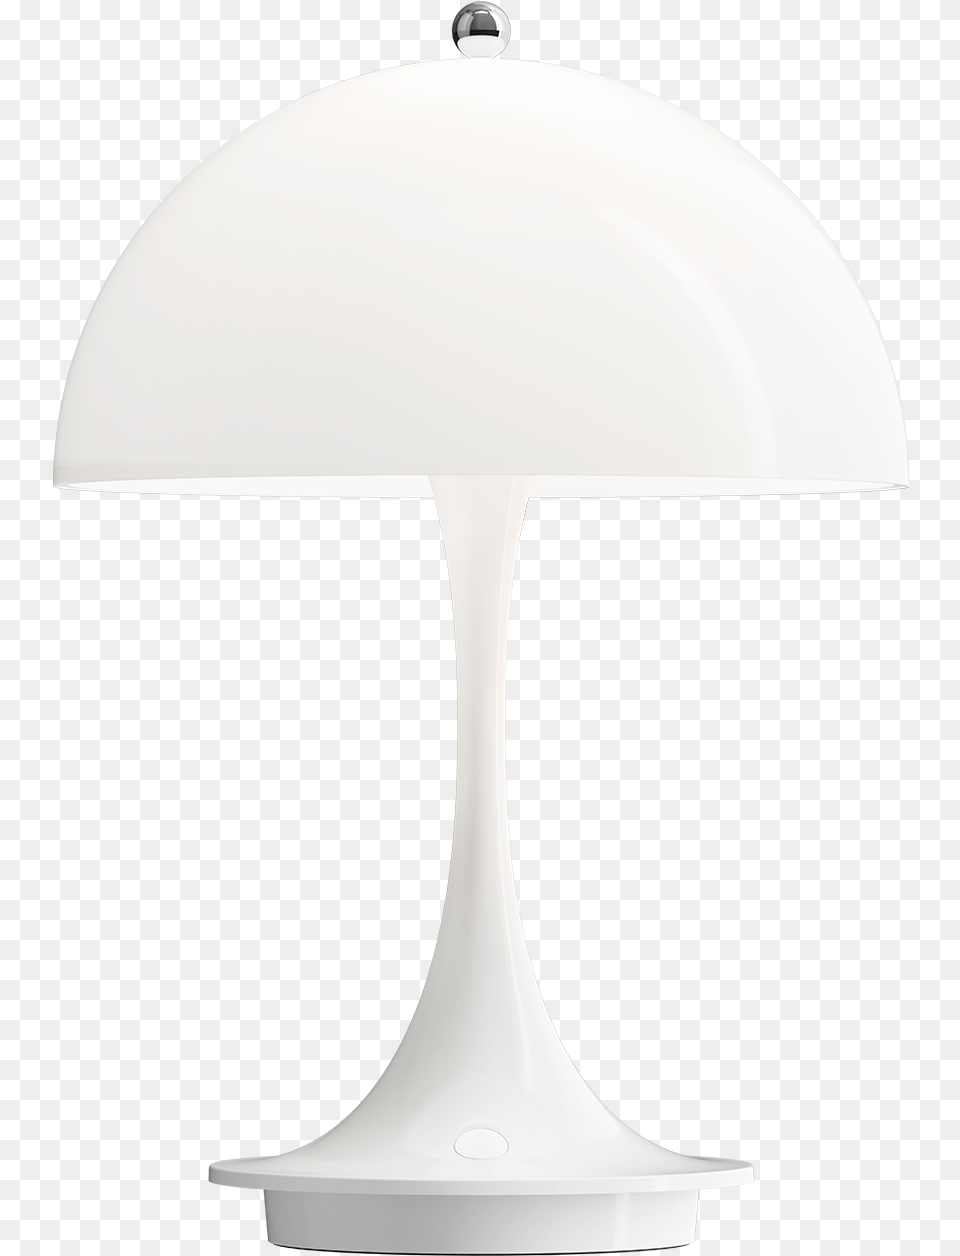 Lampshade, Lamp, Table Lamp Free Transparent Png